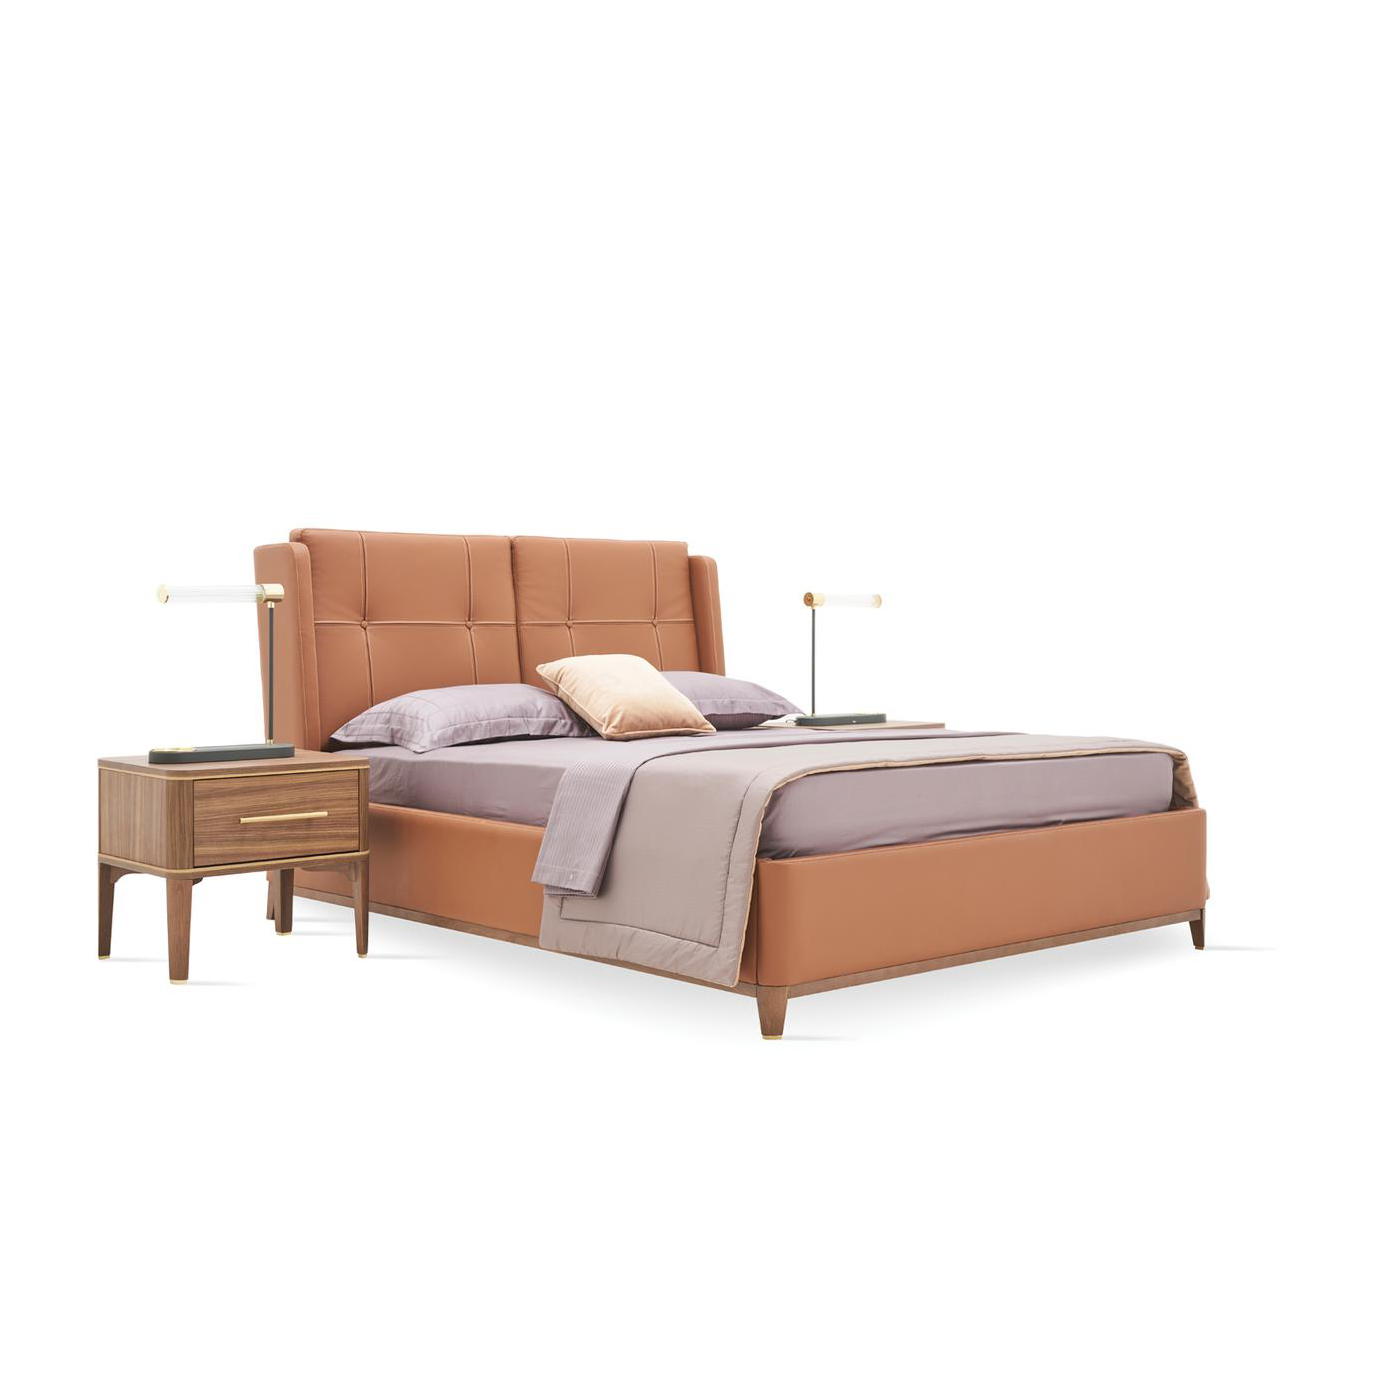 Кровать Enza Home Raum, двуспальная, с подъемным механизмом, 160х200 см